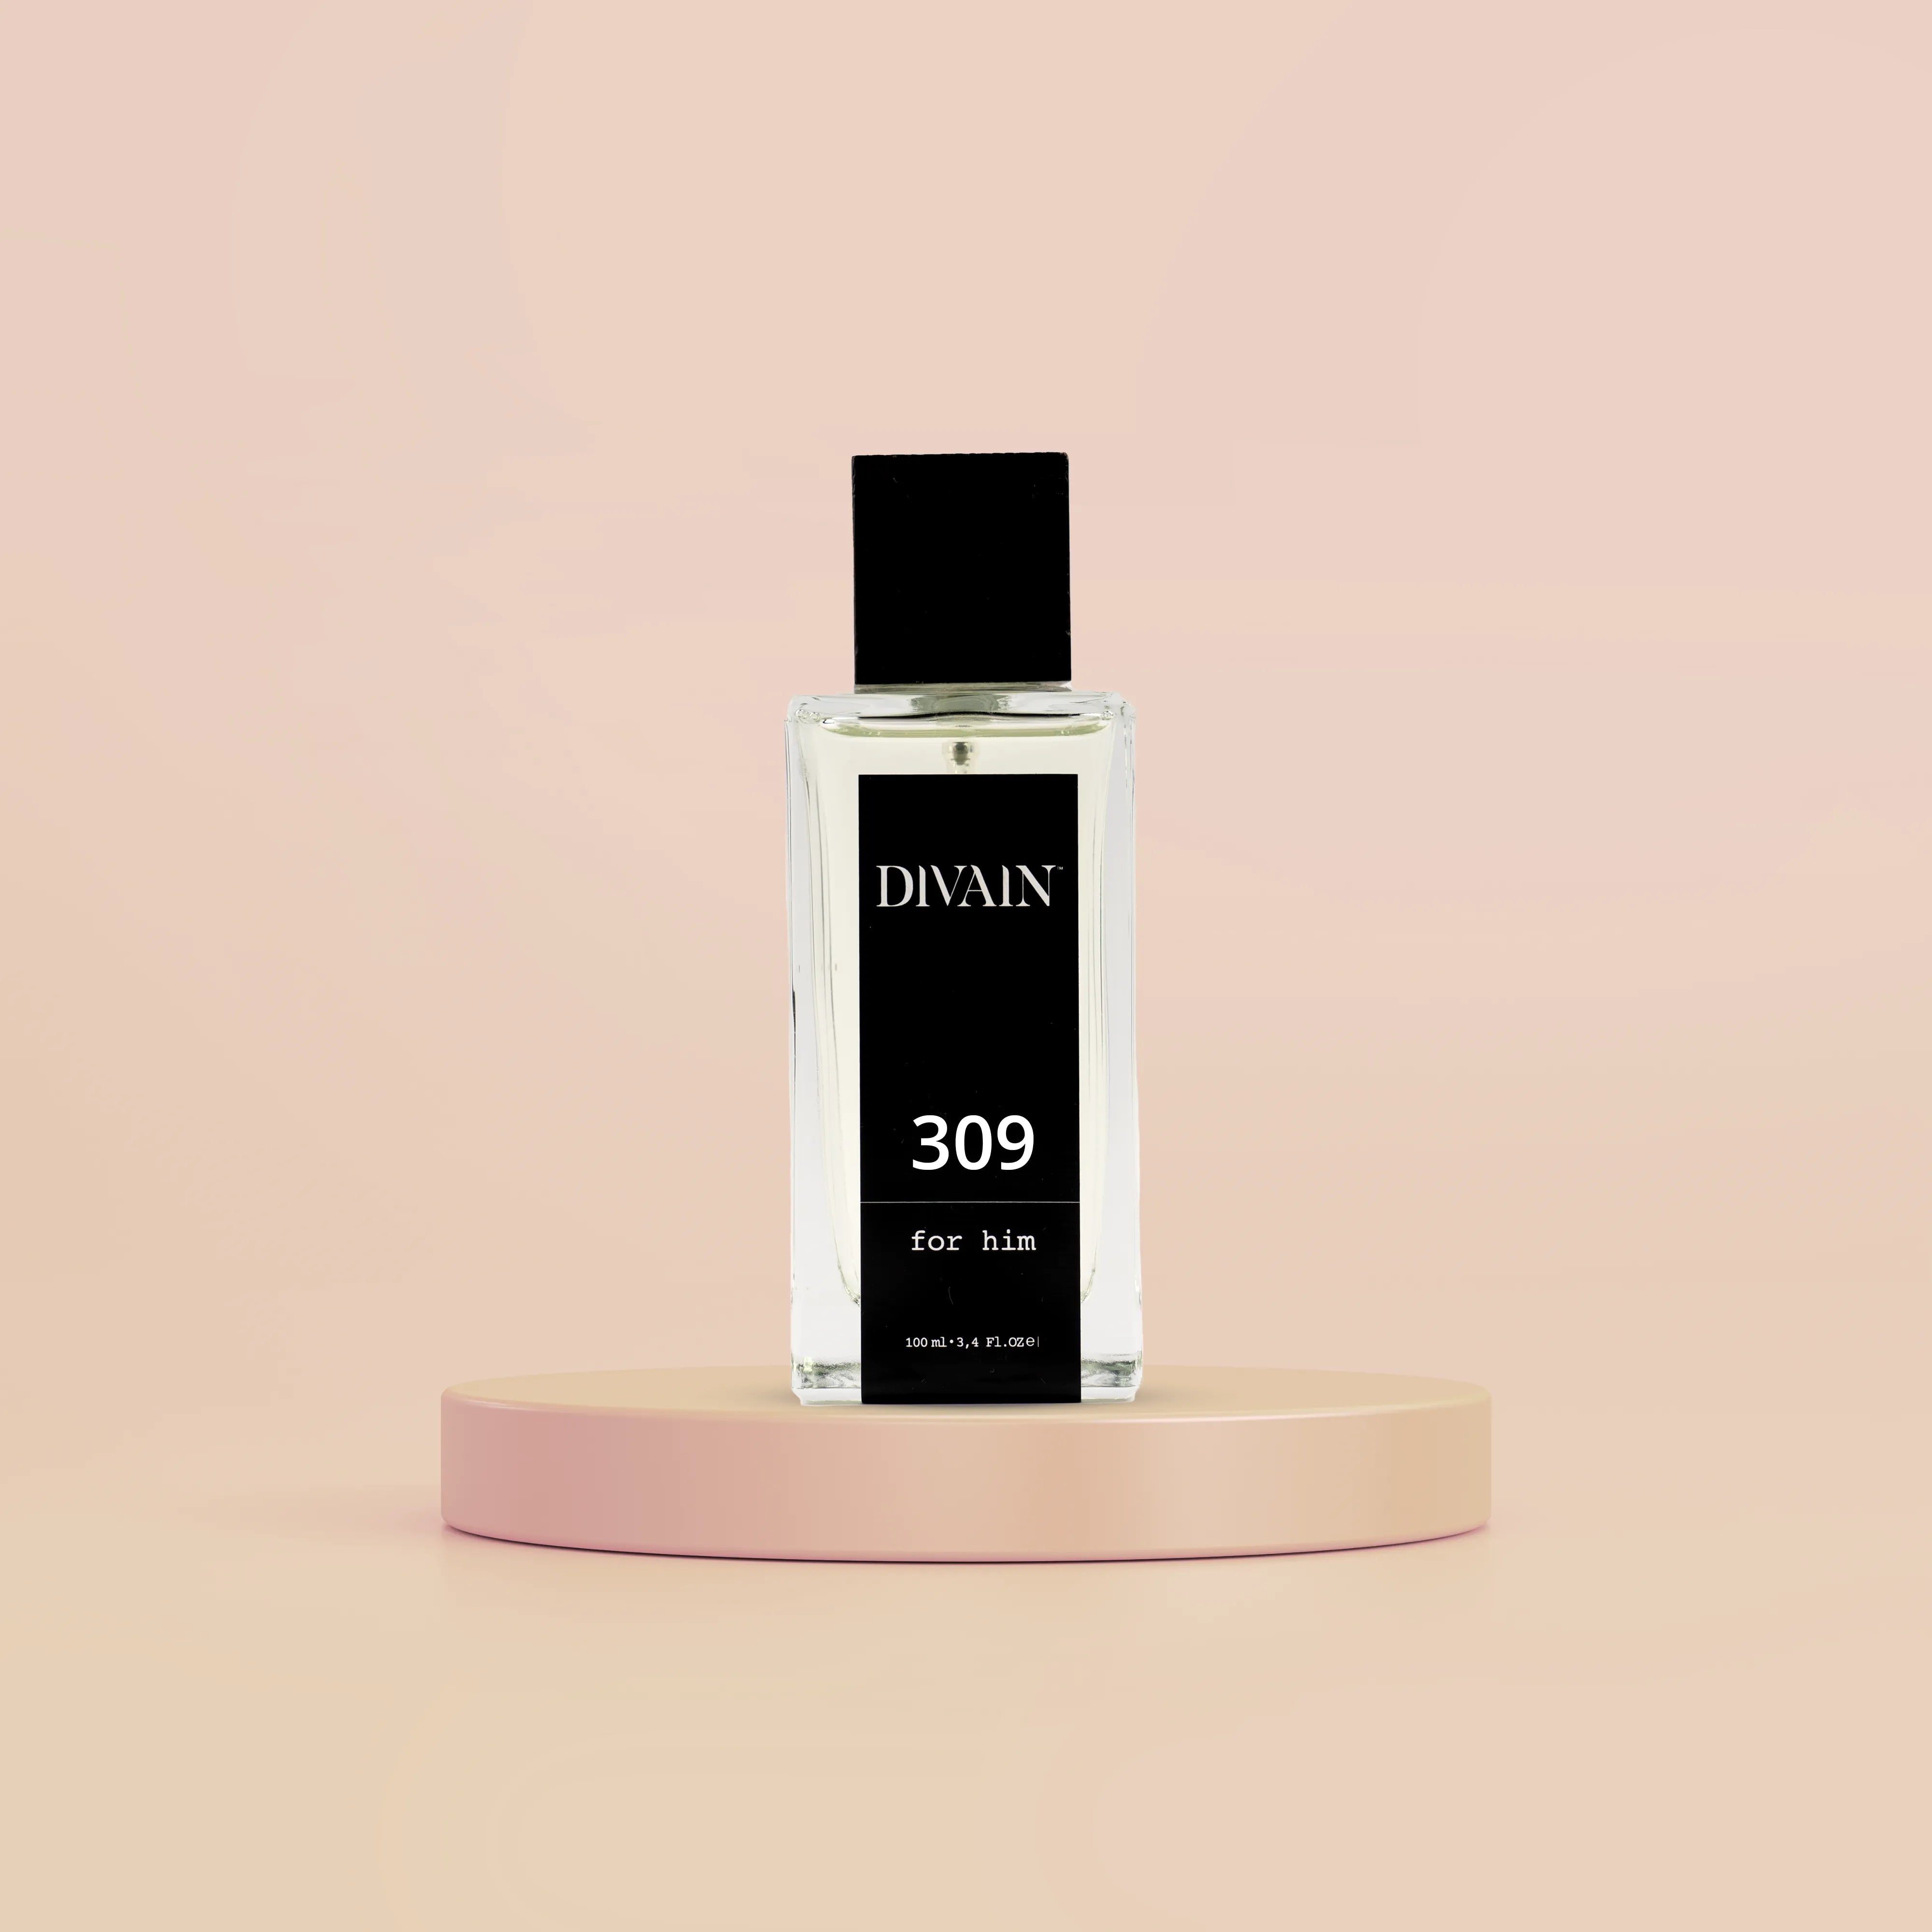 DIVAIN-309 | Similar a Dior Homme Versión 2020 de Dior | Hombre